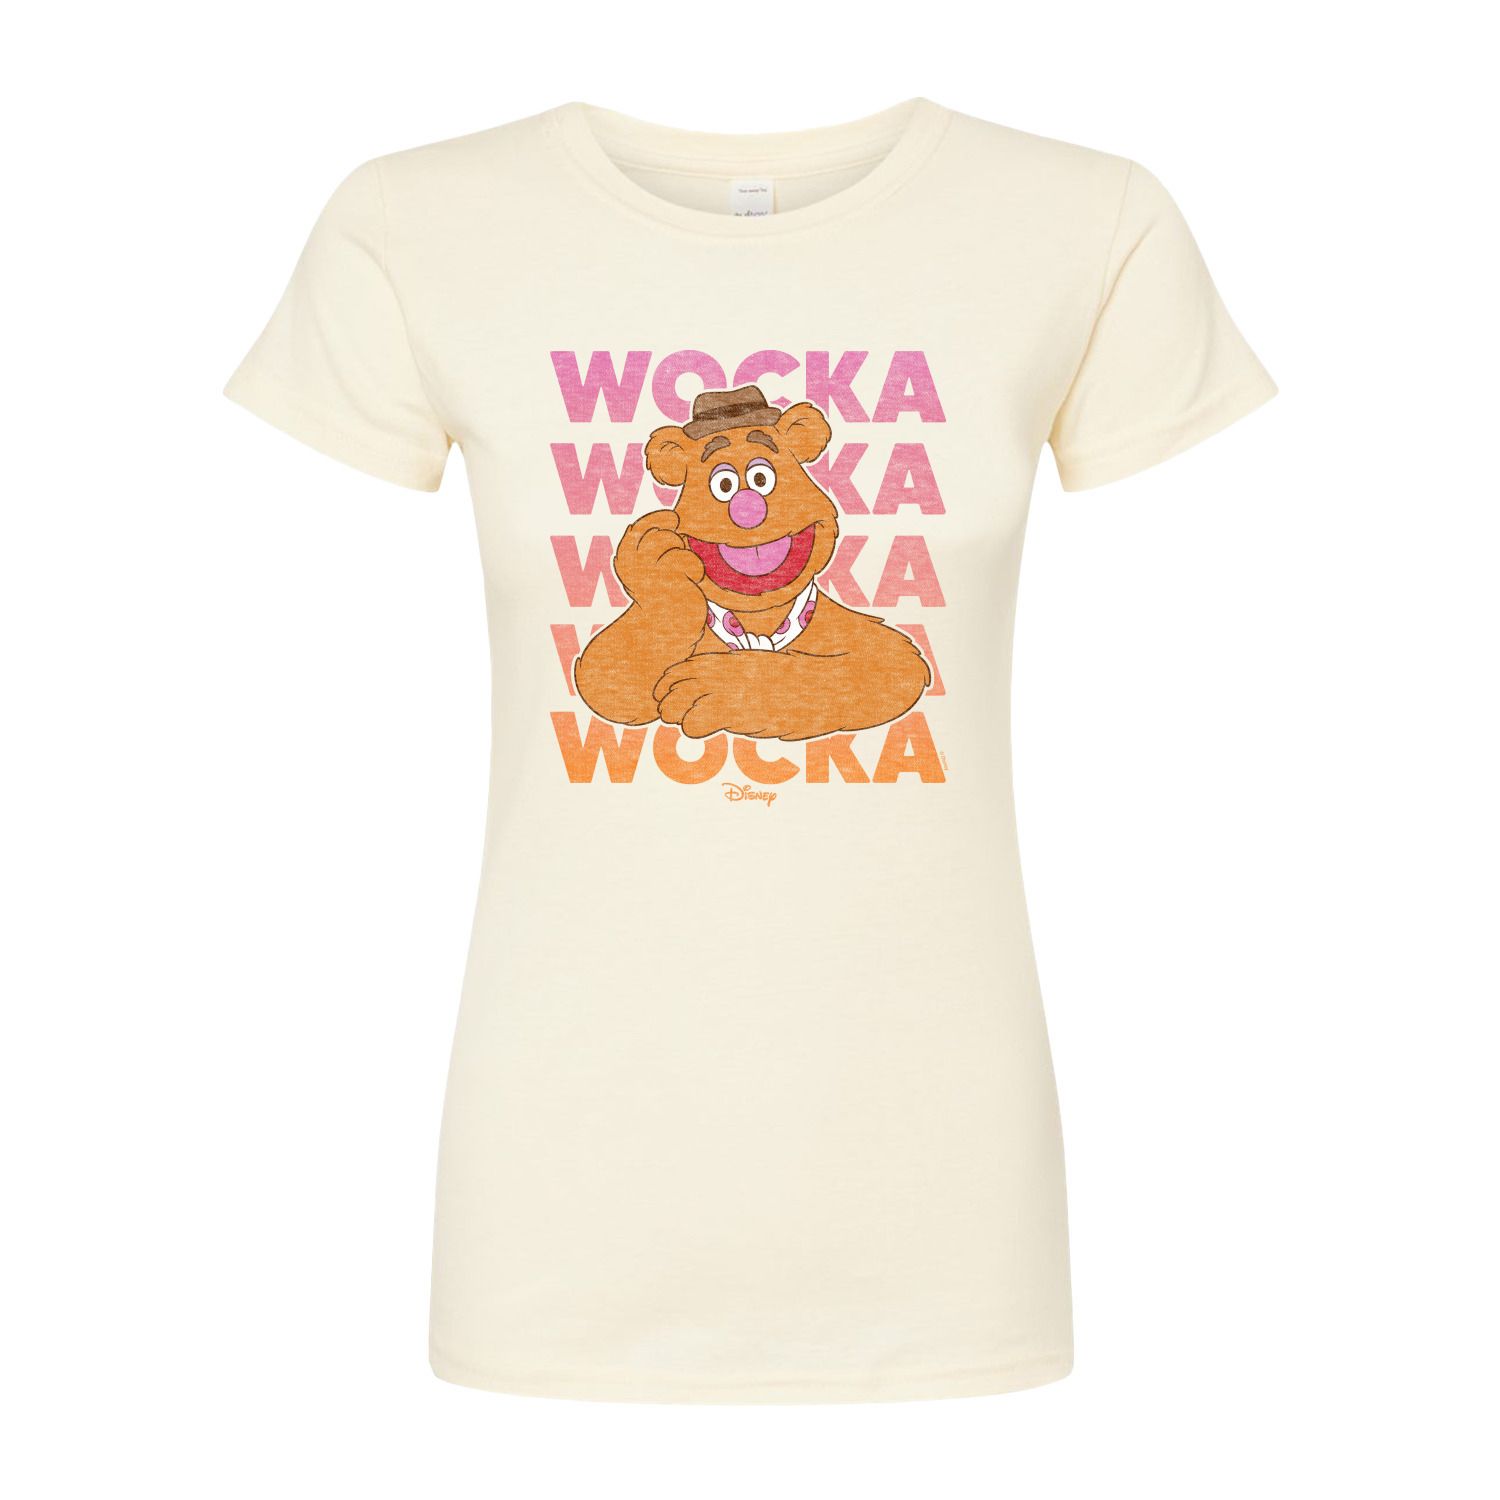 Облегающая футболка Wocka Wocka от Disney's The Muppets Juniors Licensed Character